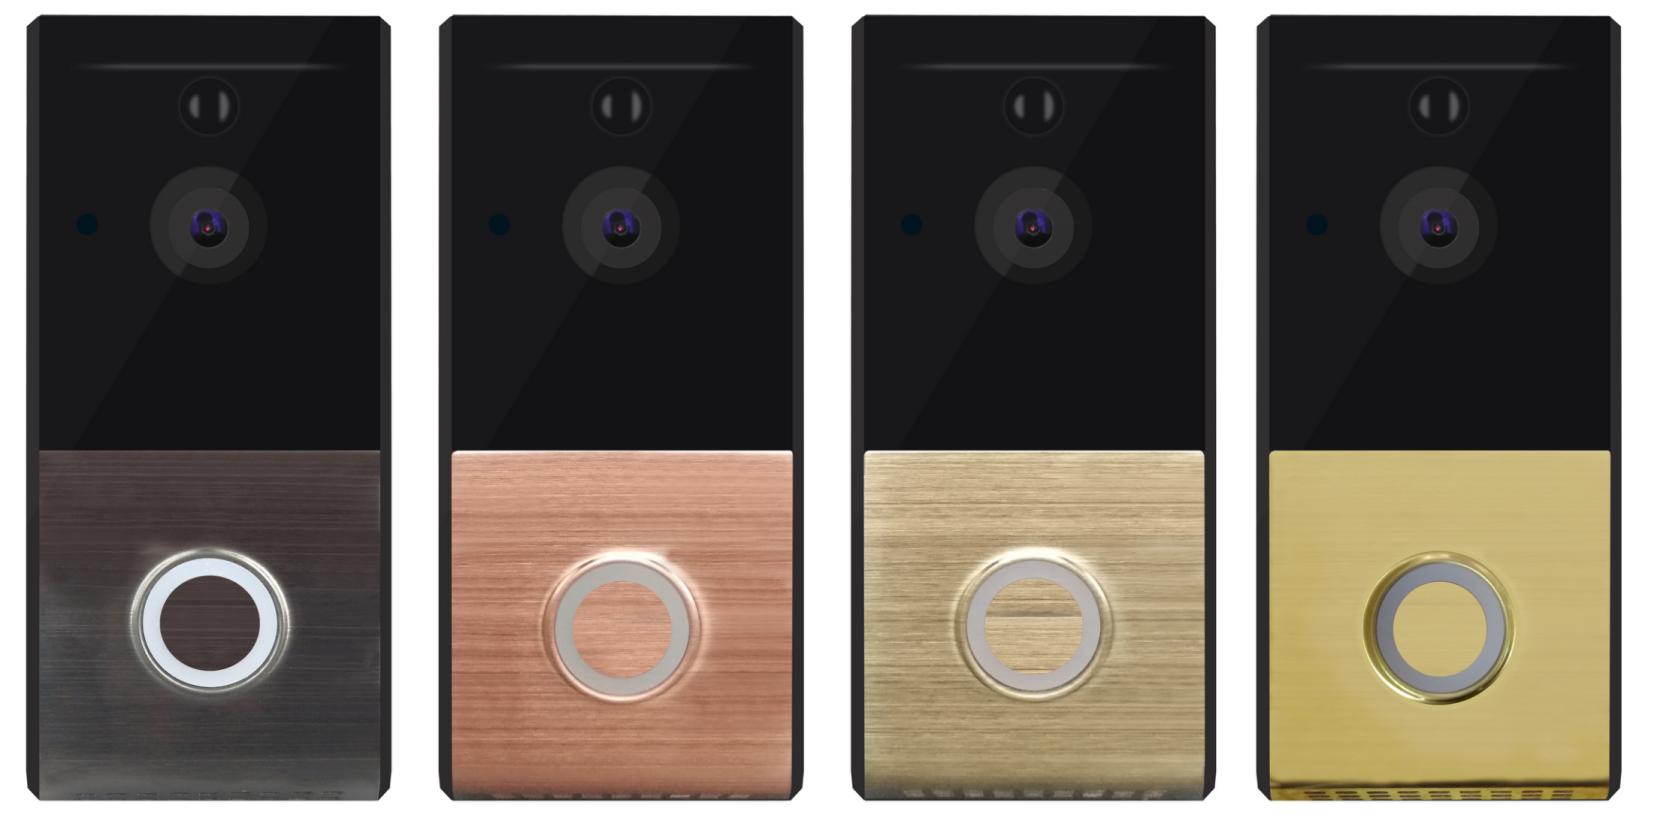 M804 4 Colors Smart Wireless Video Doorbell Low Power WIFI Visual Doorbell (1).png